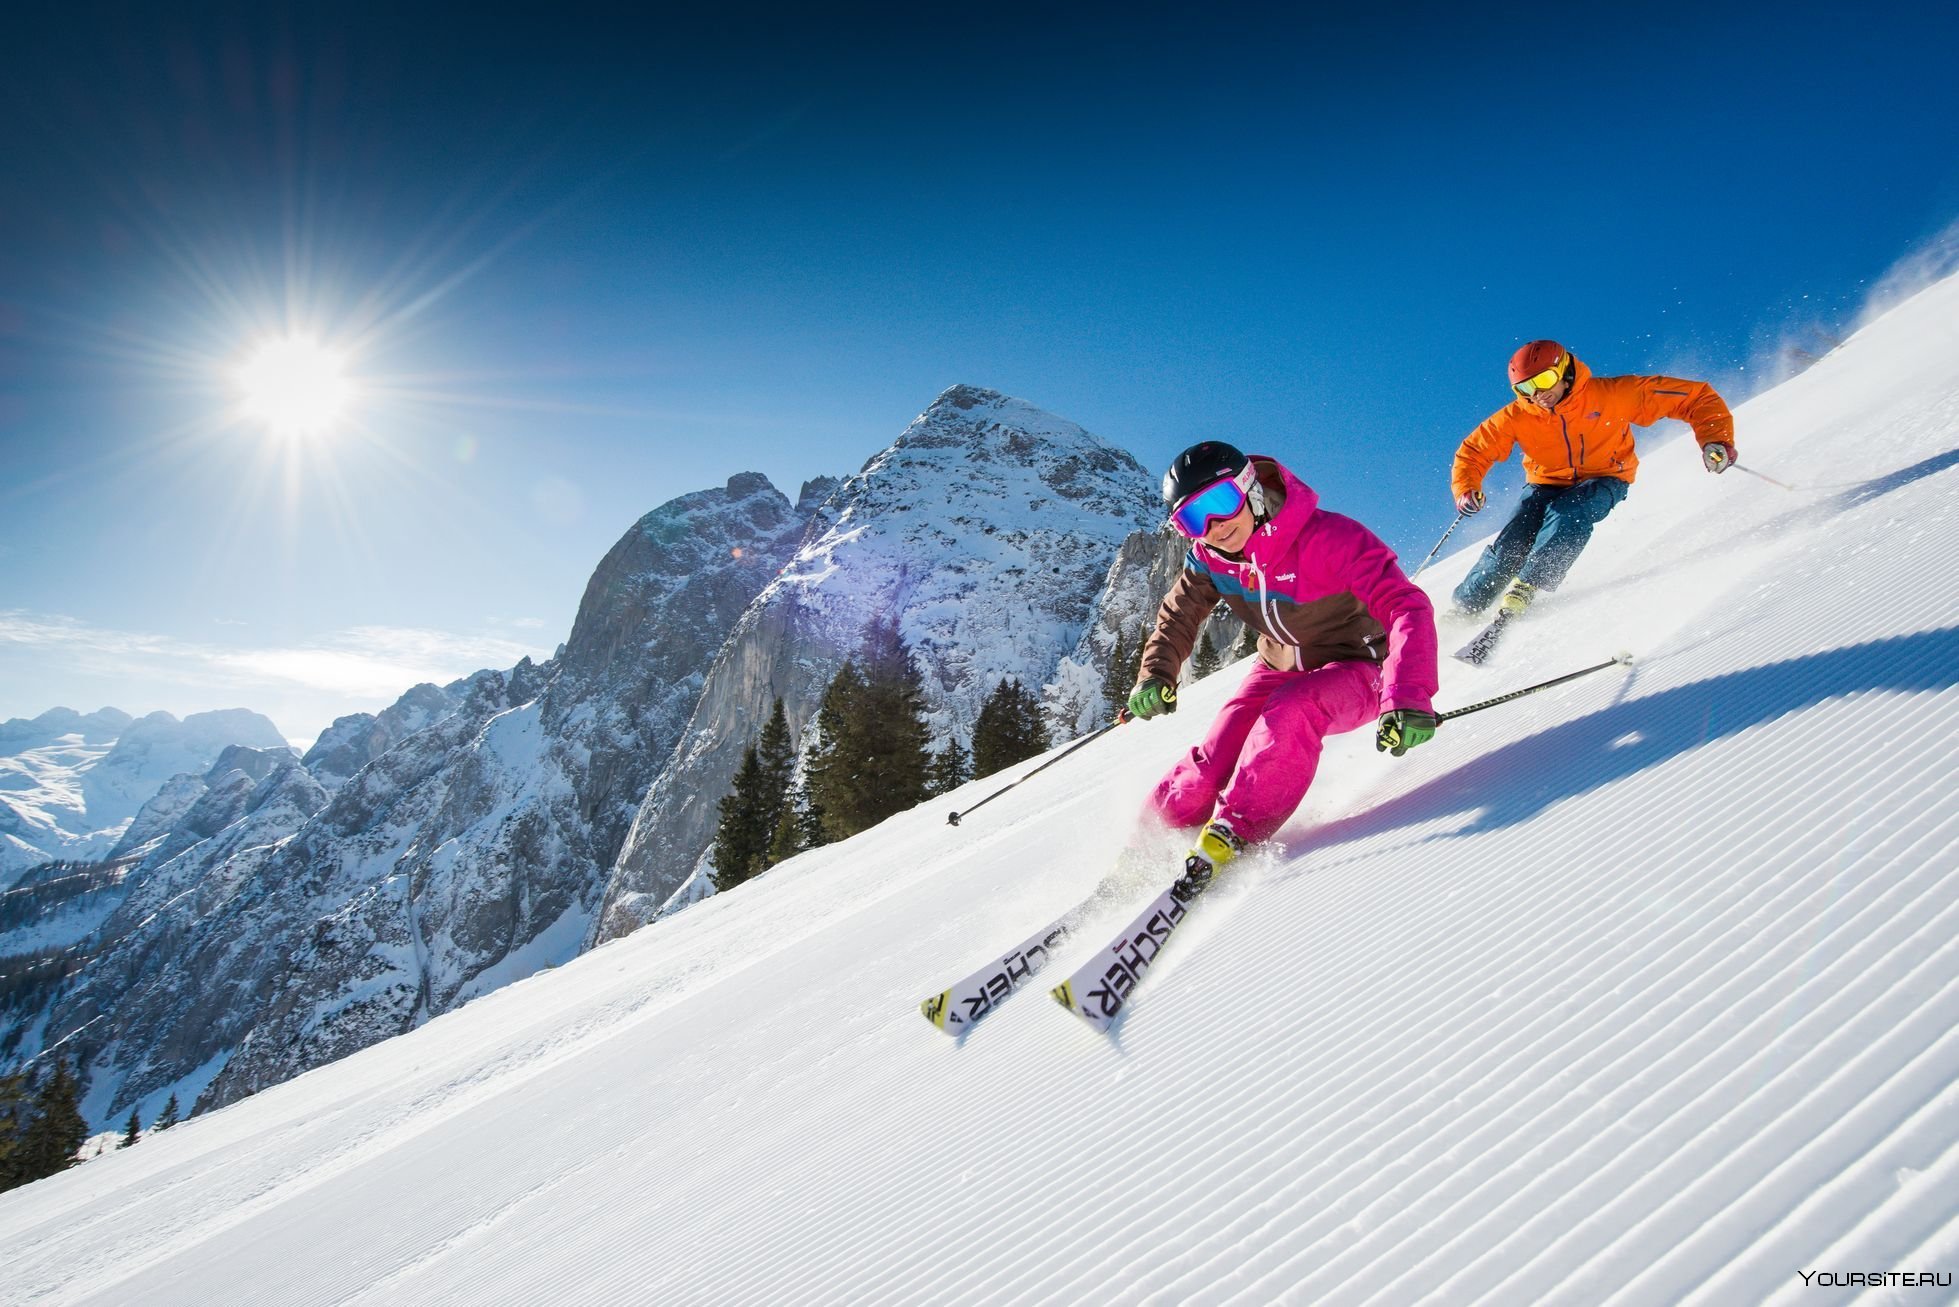 Ski continuous. Горнолыжный спорт. Горнолыжный туризм. Катание на горных лыжах. Горные лыжи спорт.